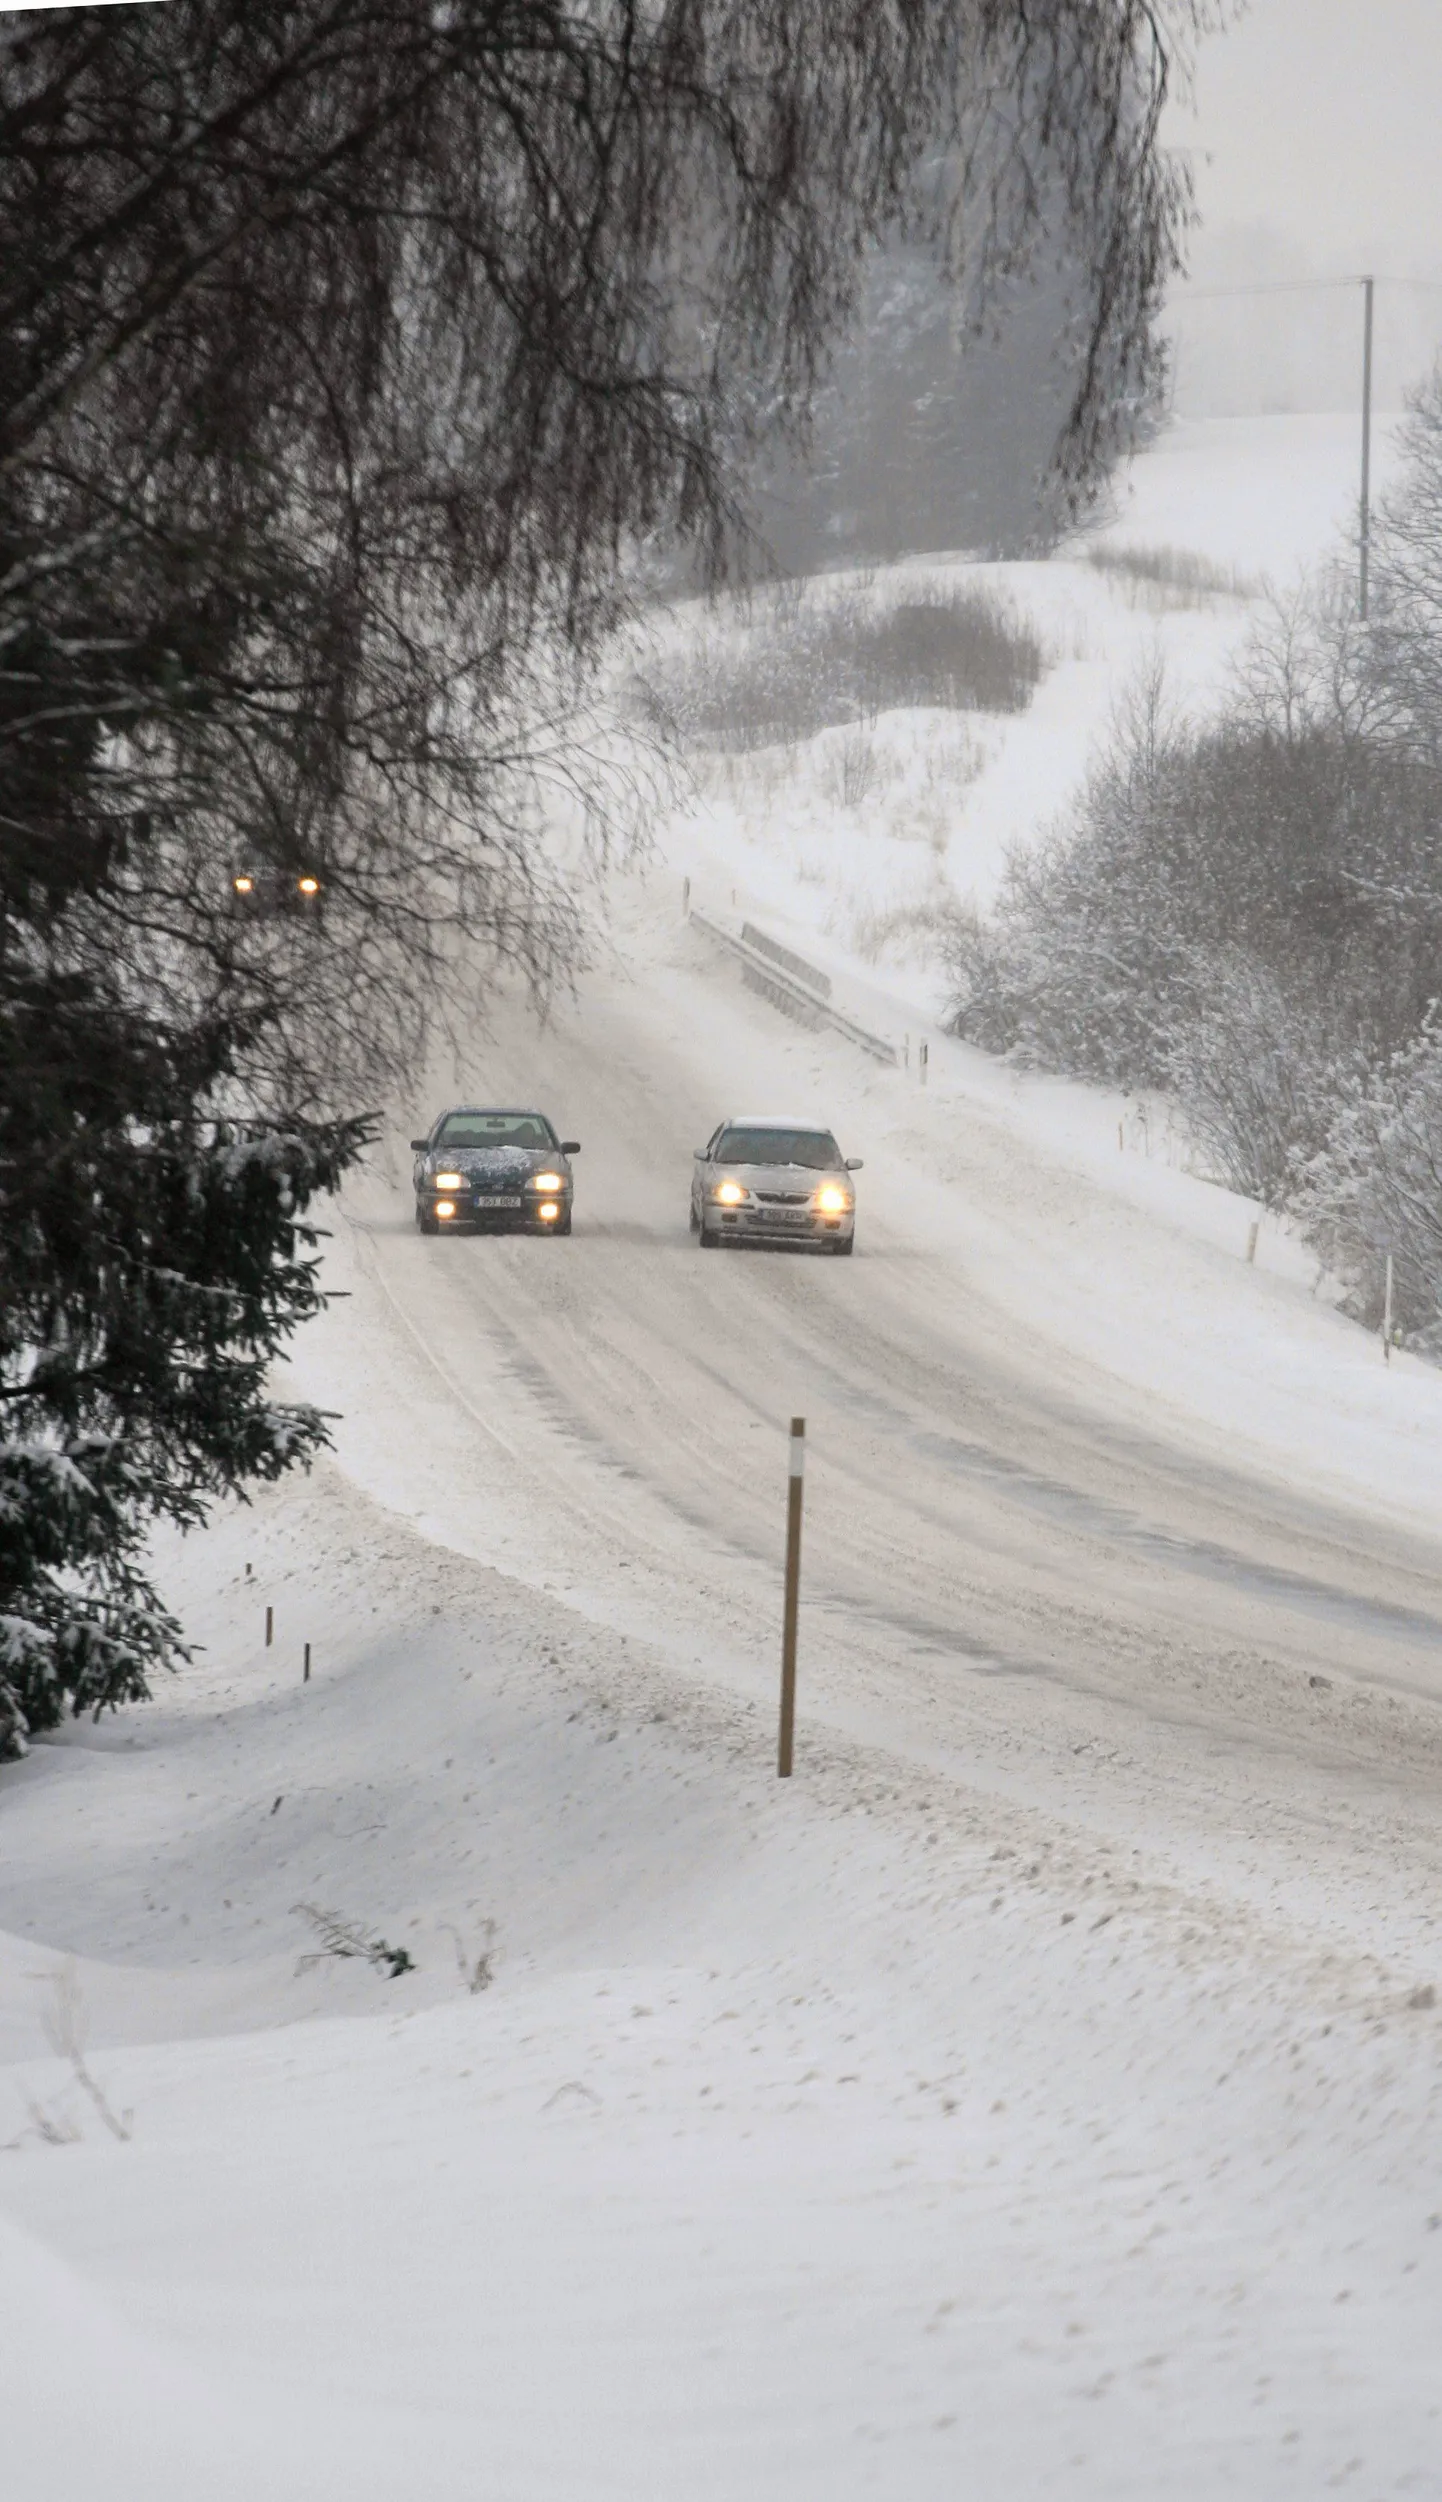 SAKALA01:TALV : VILJANDI, EESTI, 19JAN12
Talvine maantee. Kehvad liiklusolud. Lumine maantee.
er/ Foto ELMO RIIG/ SAKALA